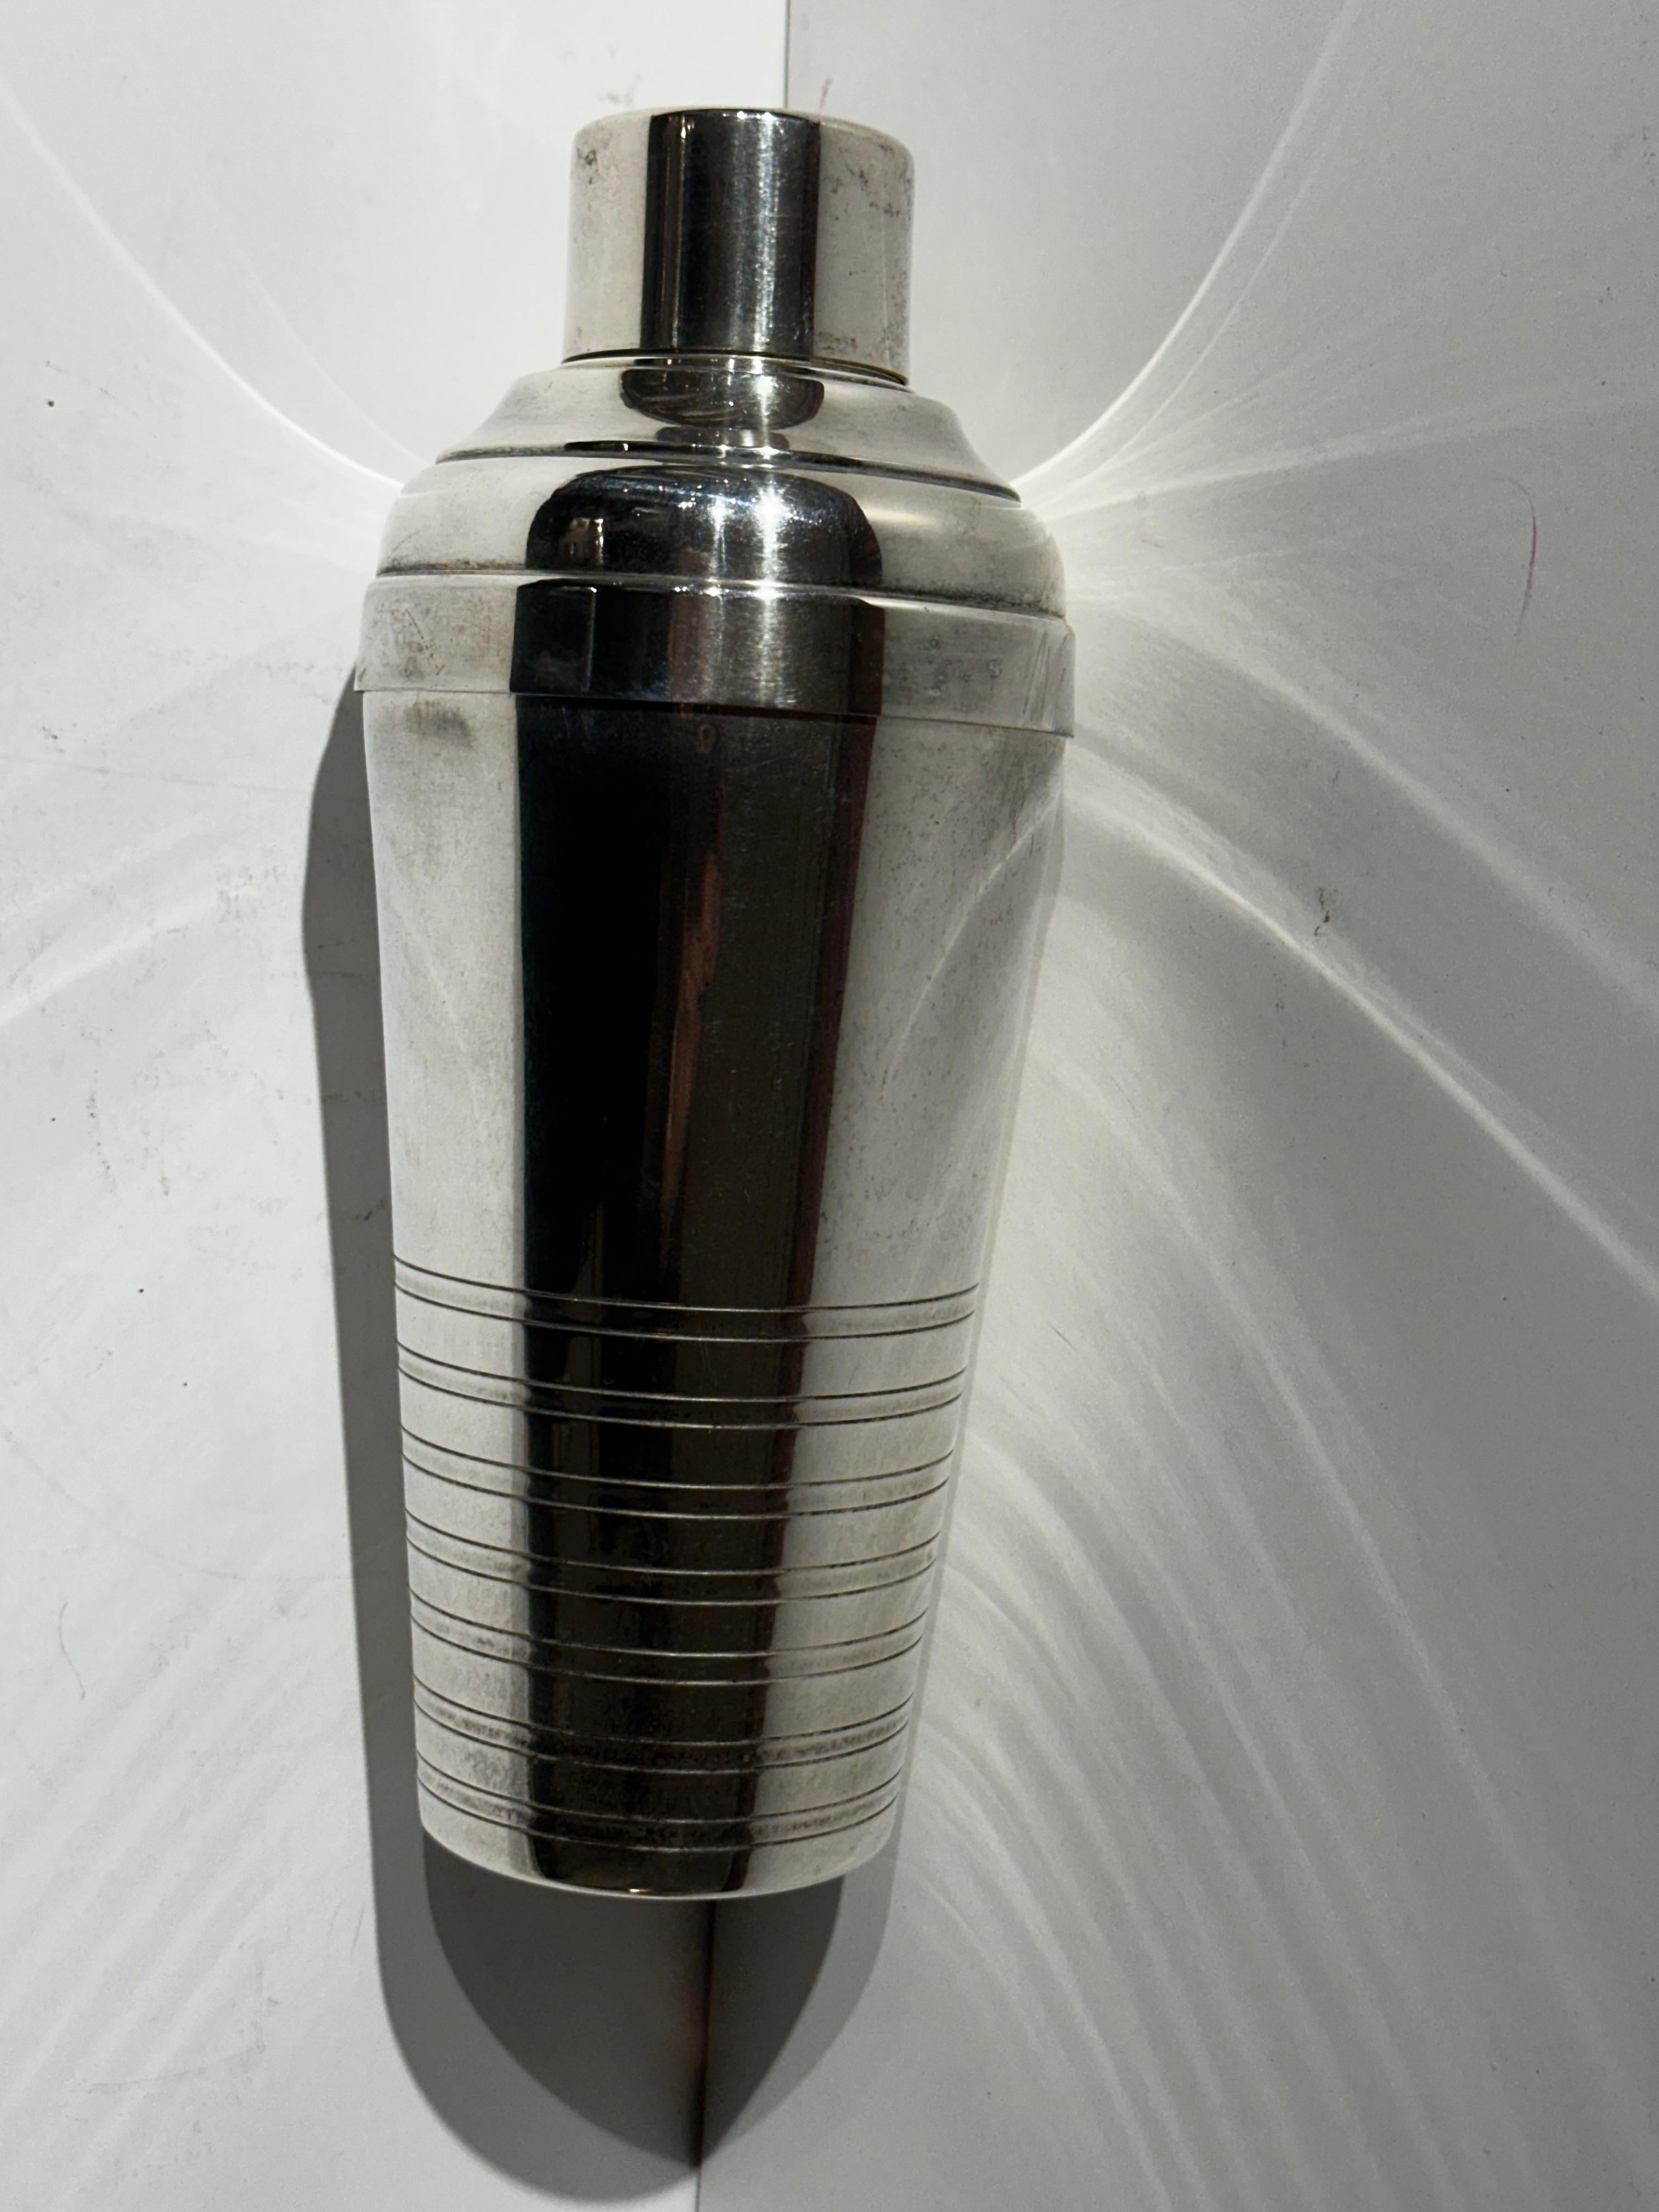 Stromlinienförmiger Cocktail Shaker, elegant in seiner Schlichtheit mit geätzten Geschwindigkeitslinien am Boden und einer glänzenden Silberoberfläche. Es gibt ein eingebautes Sieb und der Shaker wurde im klassischen französischen Stil hergestellt.